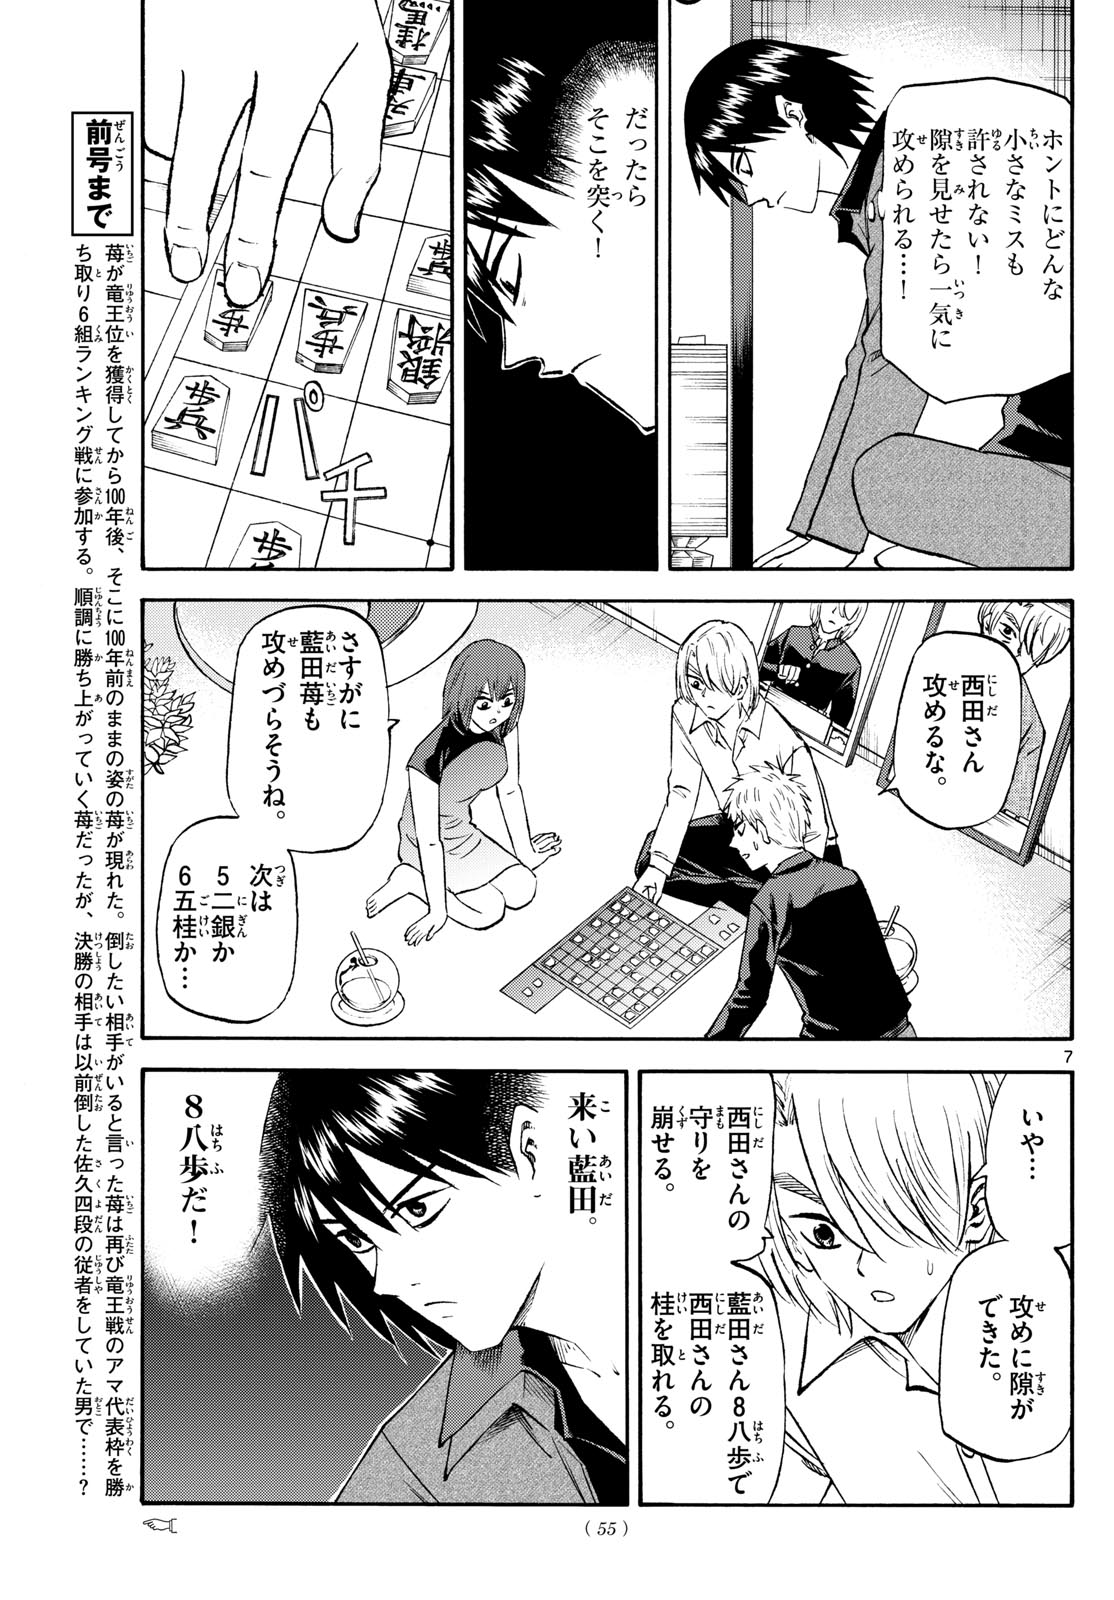 Tatsu to Ichigo - Chapter 194 - Page 7